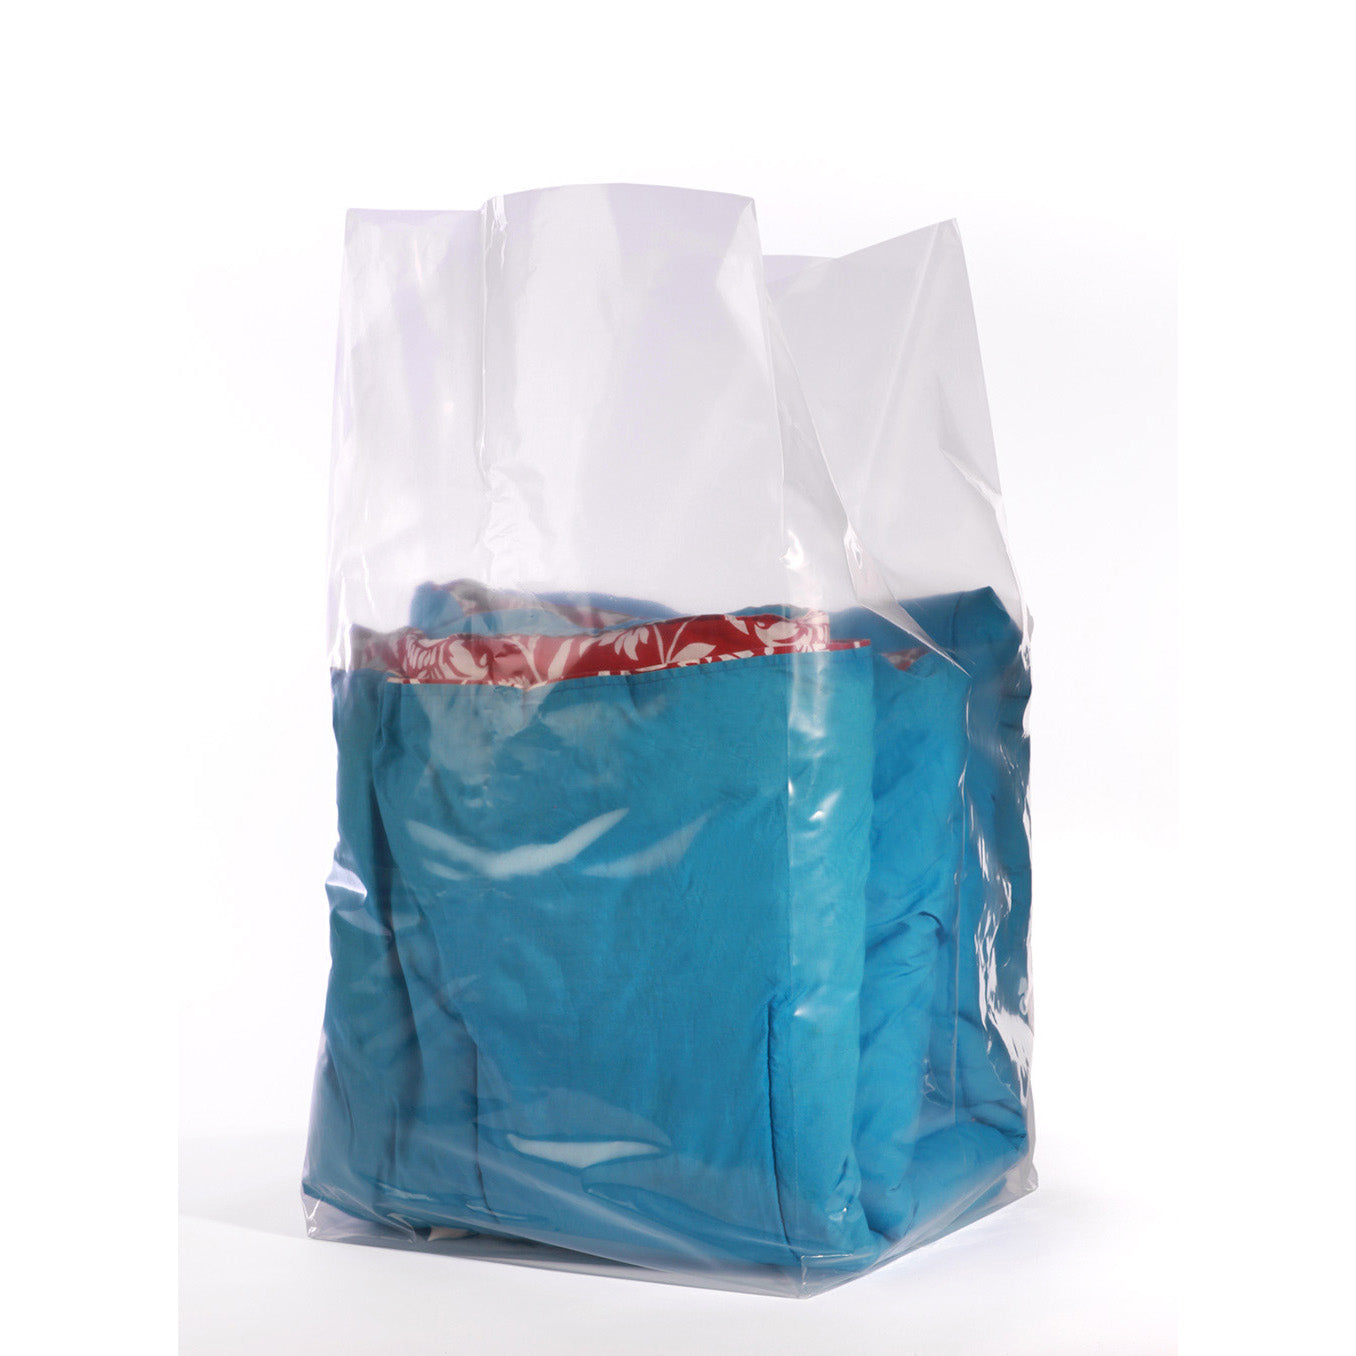 Top Polythene Bag Manufacturers in Tirupur East - Best Poly Bag  Manufacturers Tirupur - Justdial